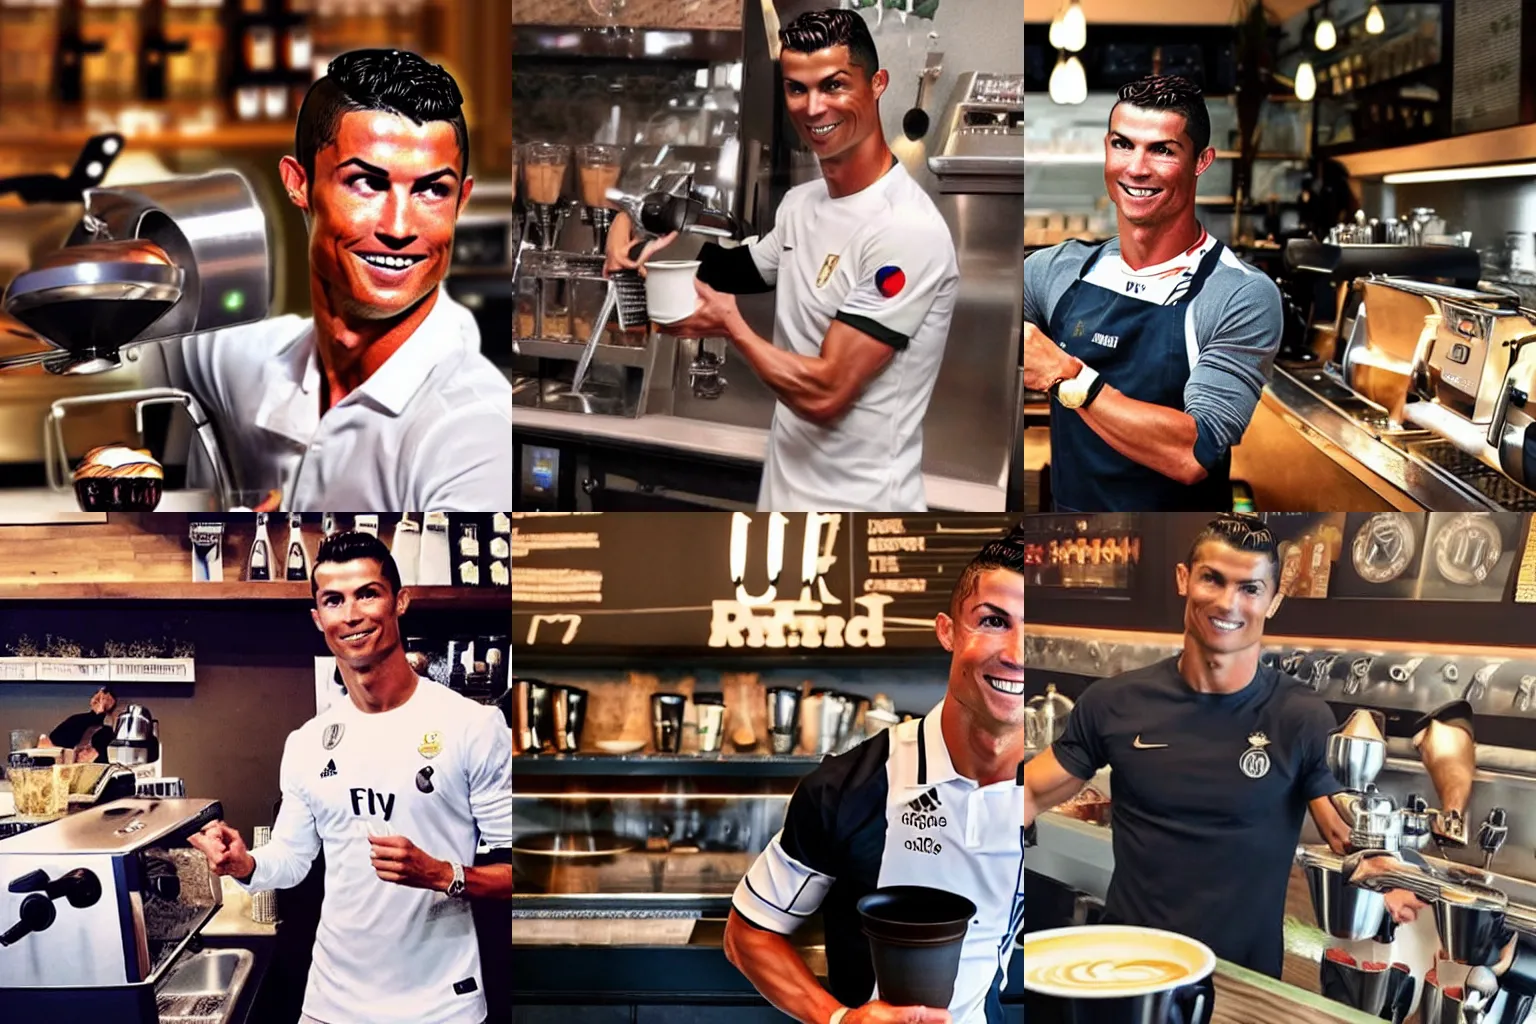 Prompt: Cristiano Ronaldo as a barista, realistic photo